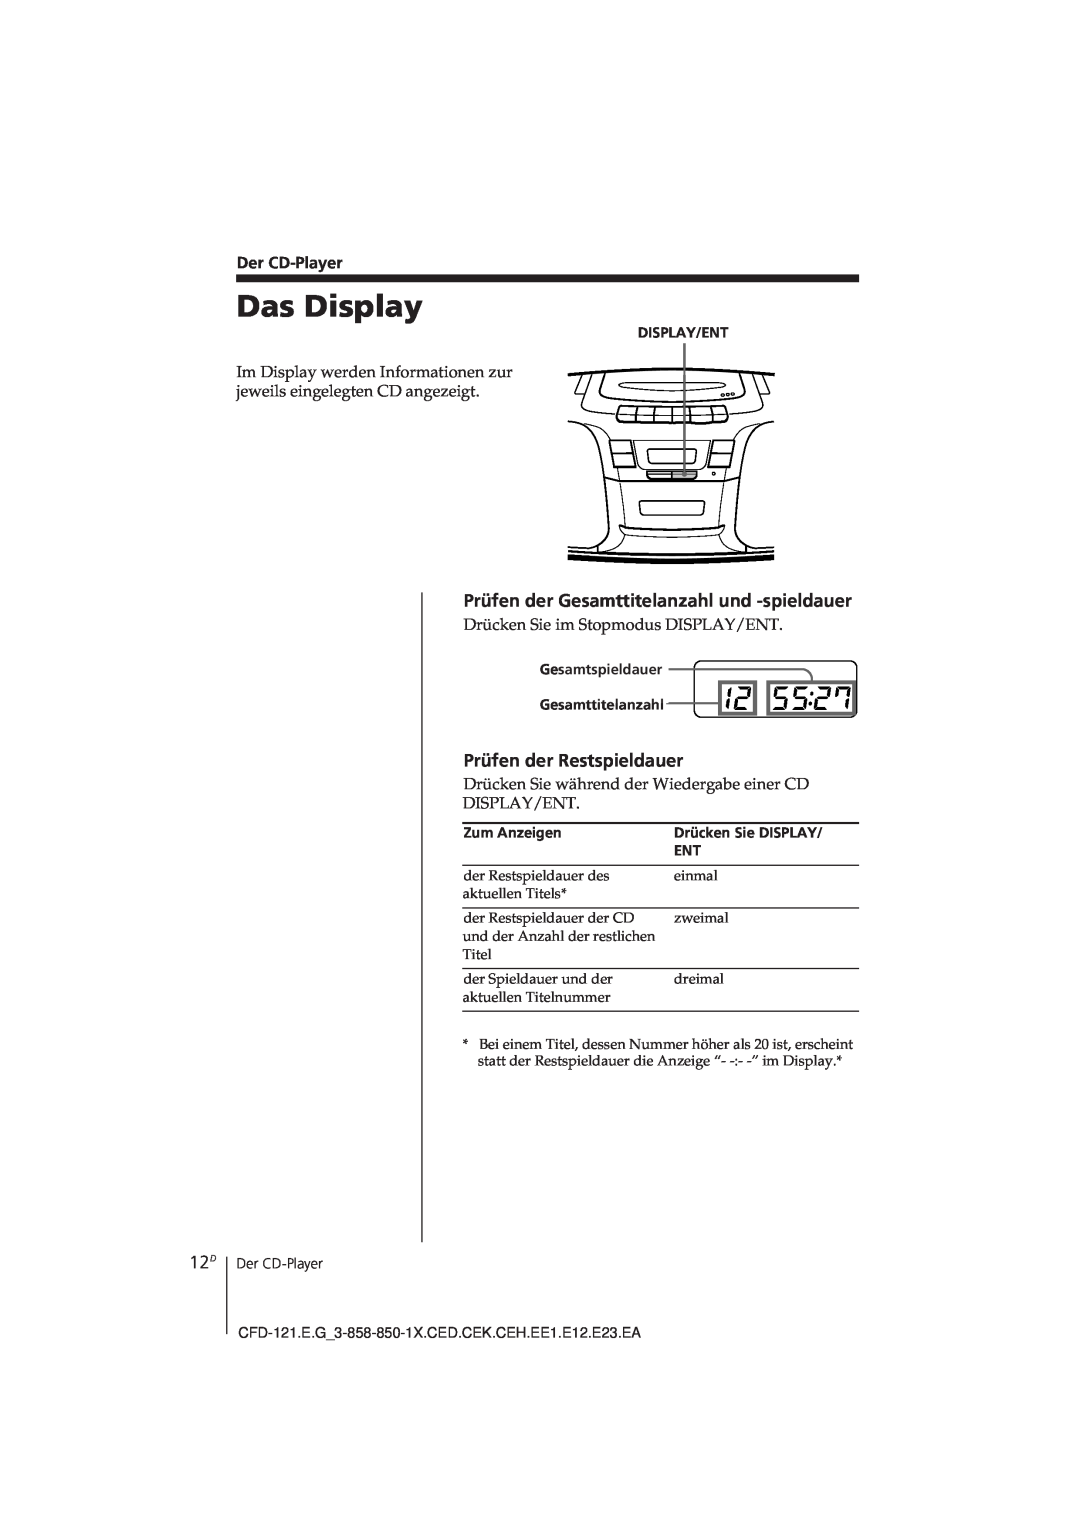 Sony CFD-121 Das Display, Der CD-Player, Display/Ent, Gesamtspieldauer Gesamttitelanzahl, Zum Anzeigen 